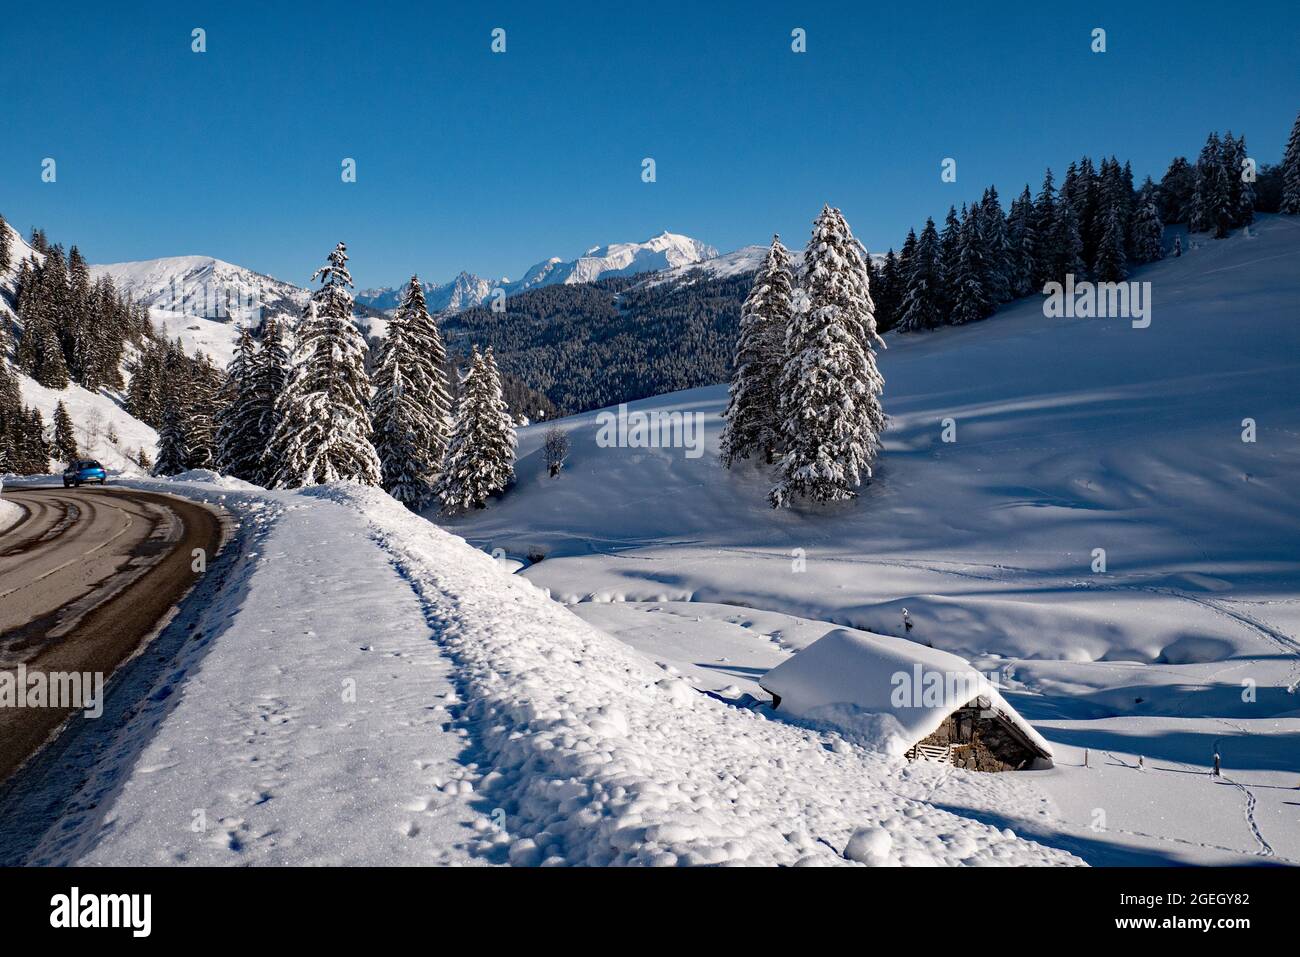 La Clusaz (Alpes, centre-est de la France) : paysage montagneux avec chalets couverts de neige dans la station de ski, vue de la route menant à l'ap Banque D'Images